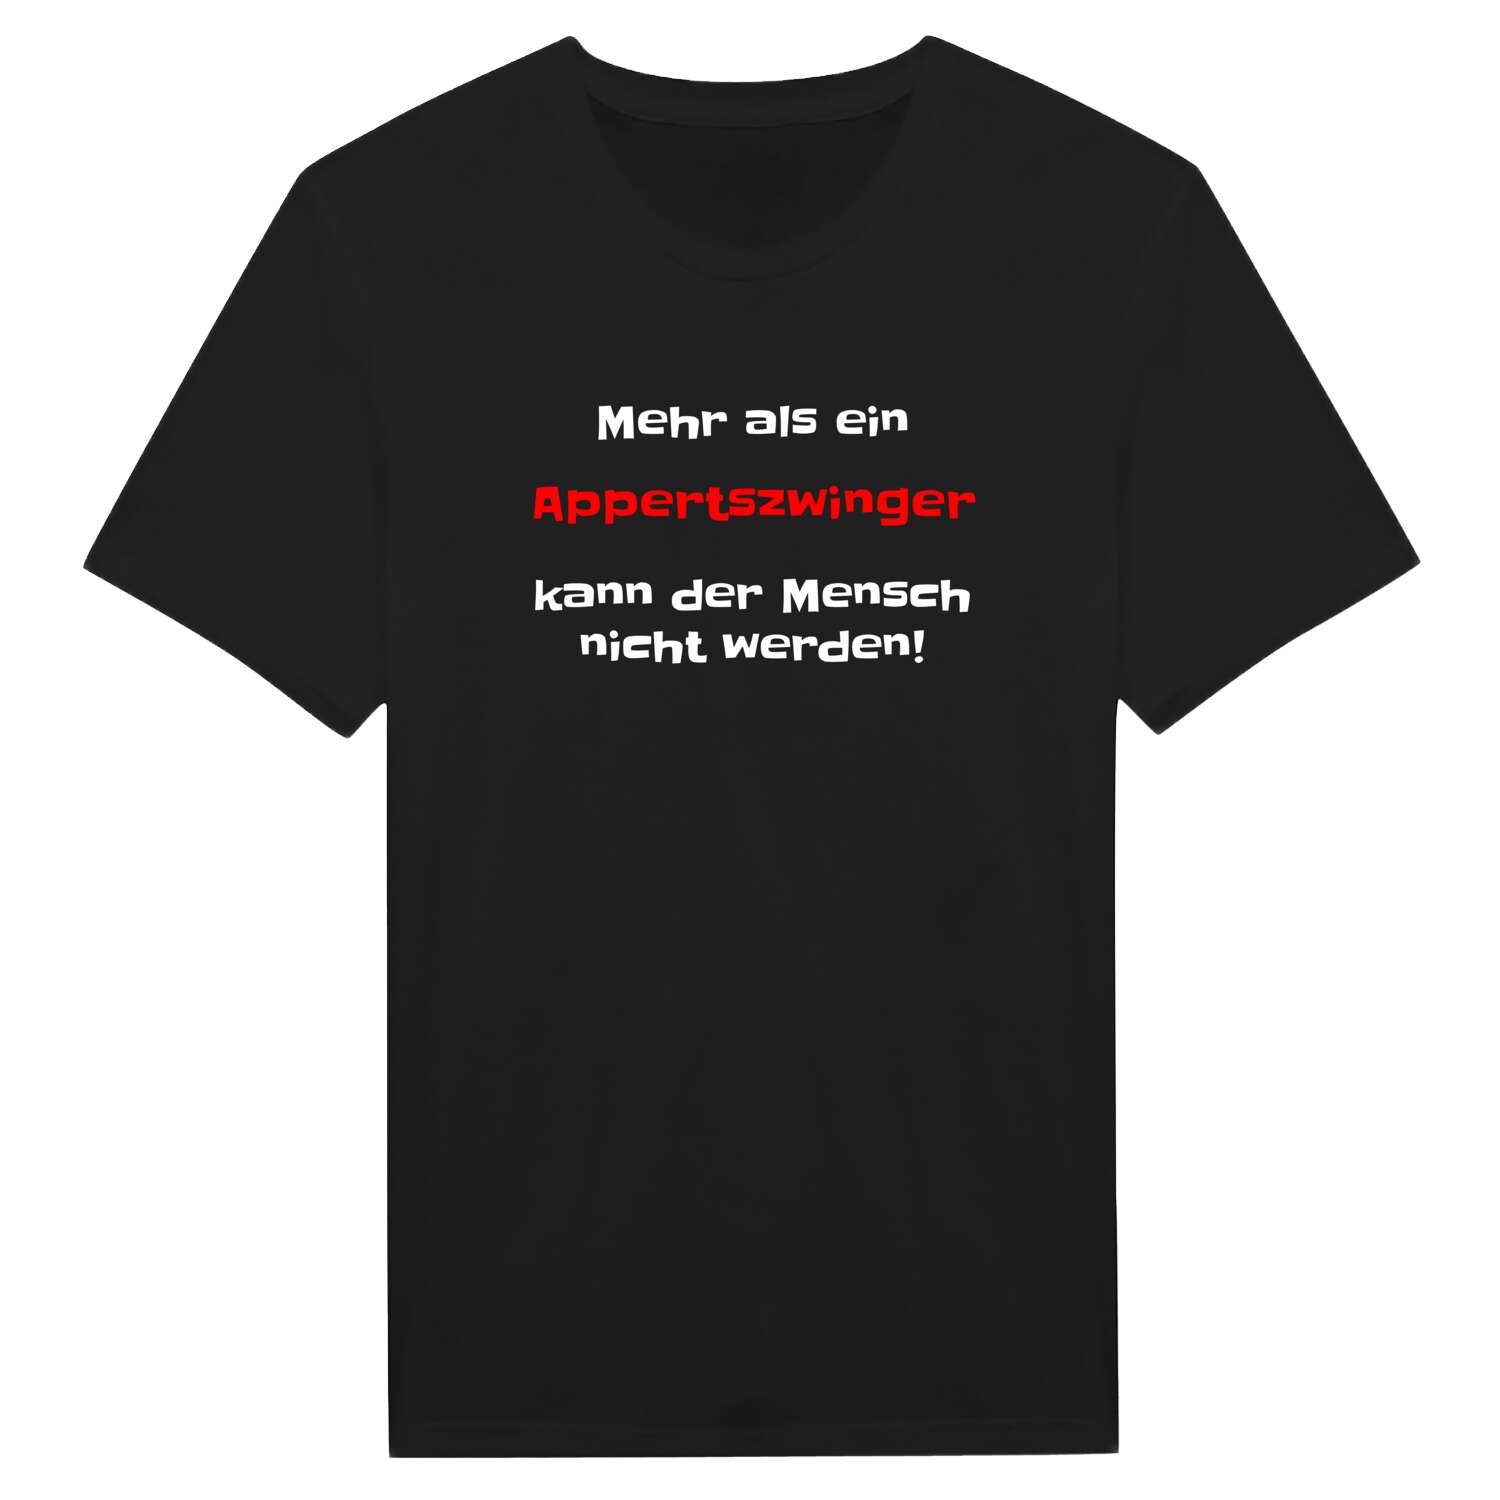 Appertszwing T-Shirt »Mehr als ein«